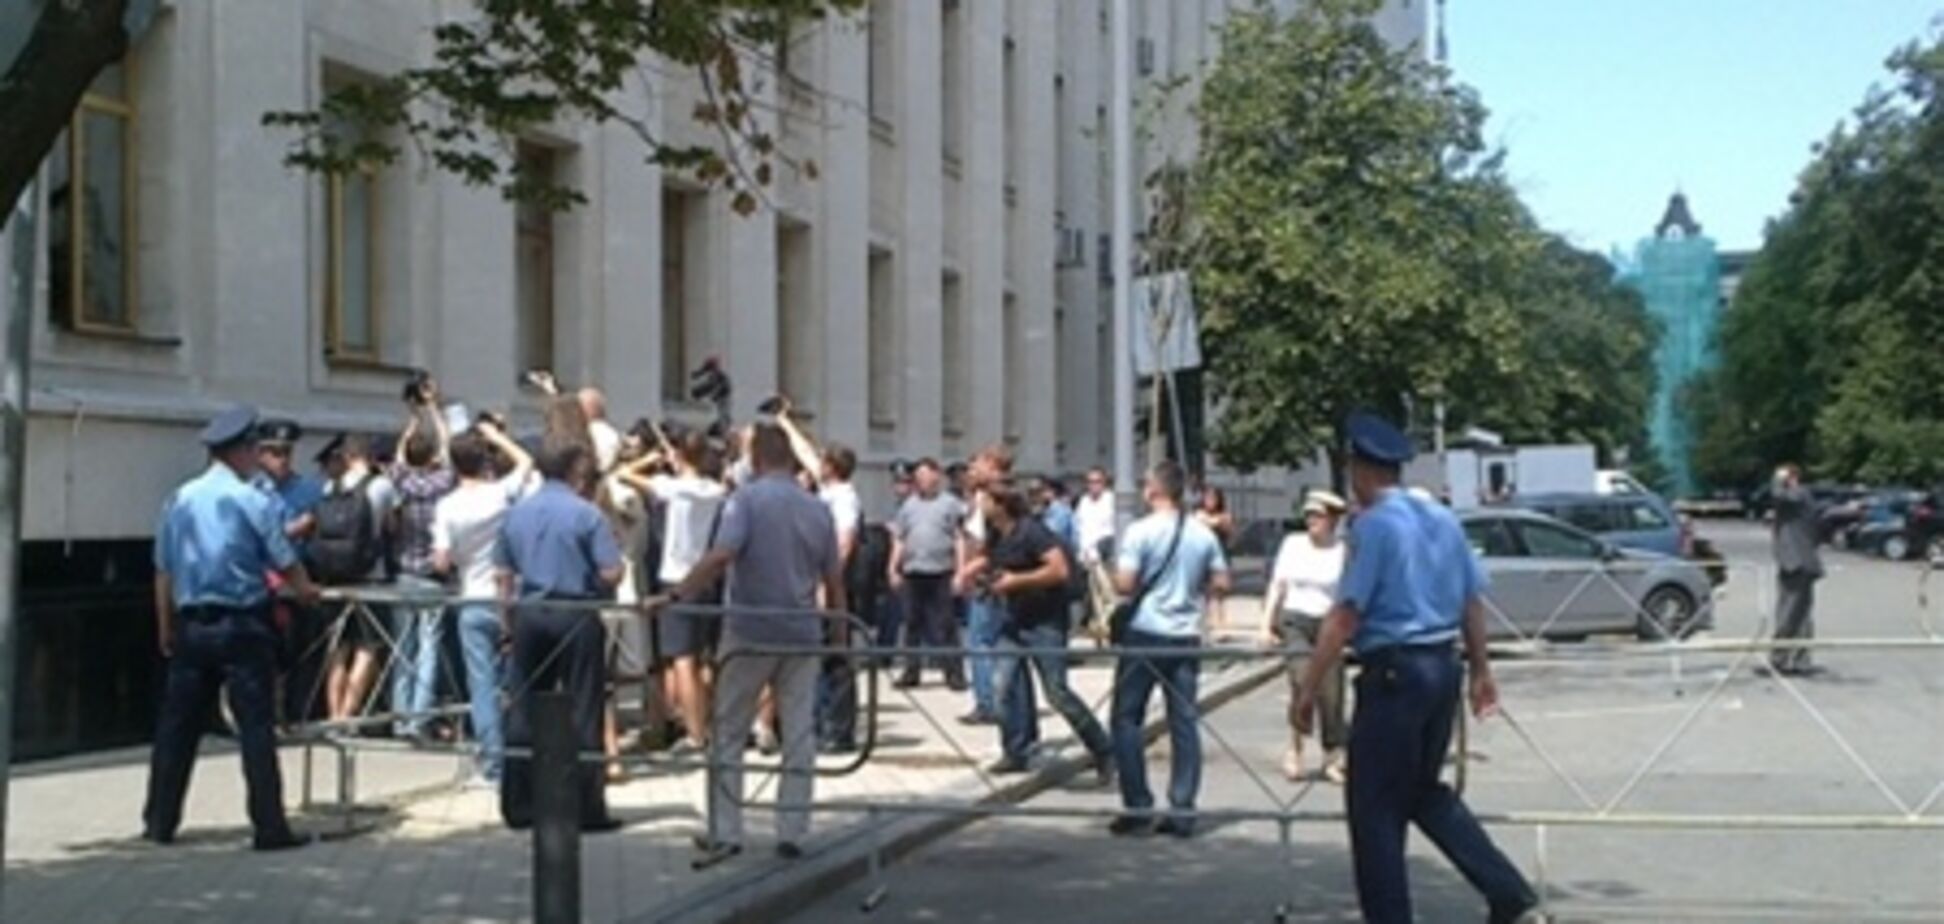 На Банковой задержали активистов за акцию Клуба адских диктаторов